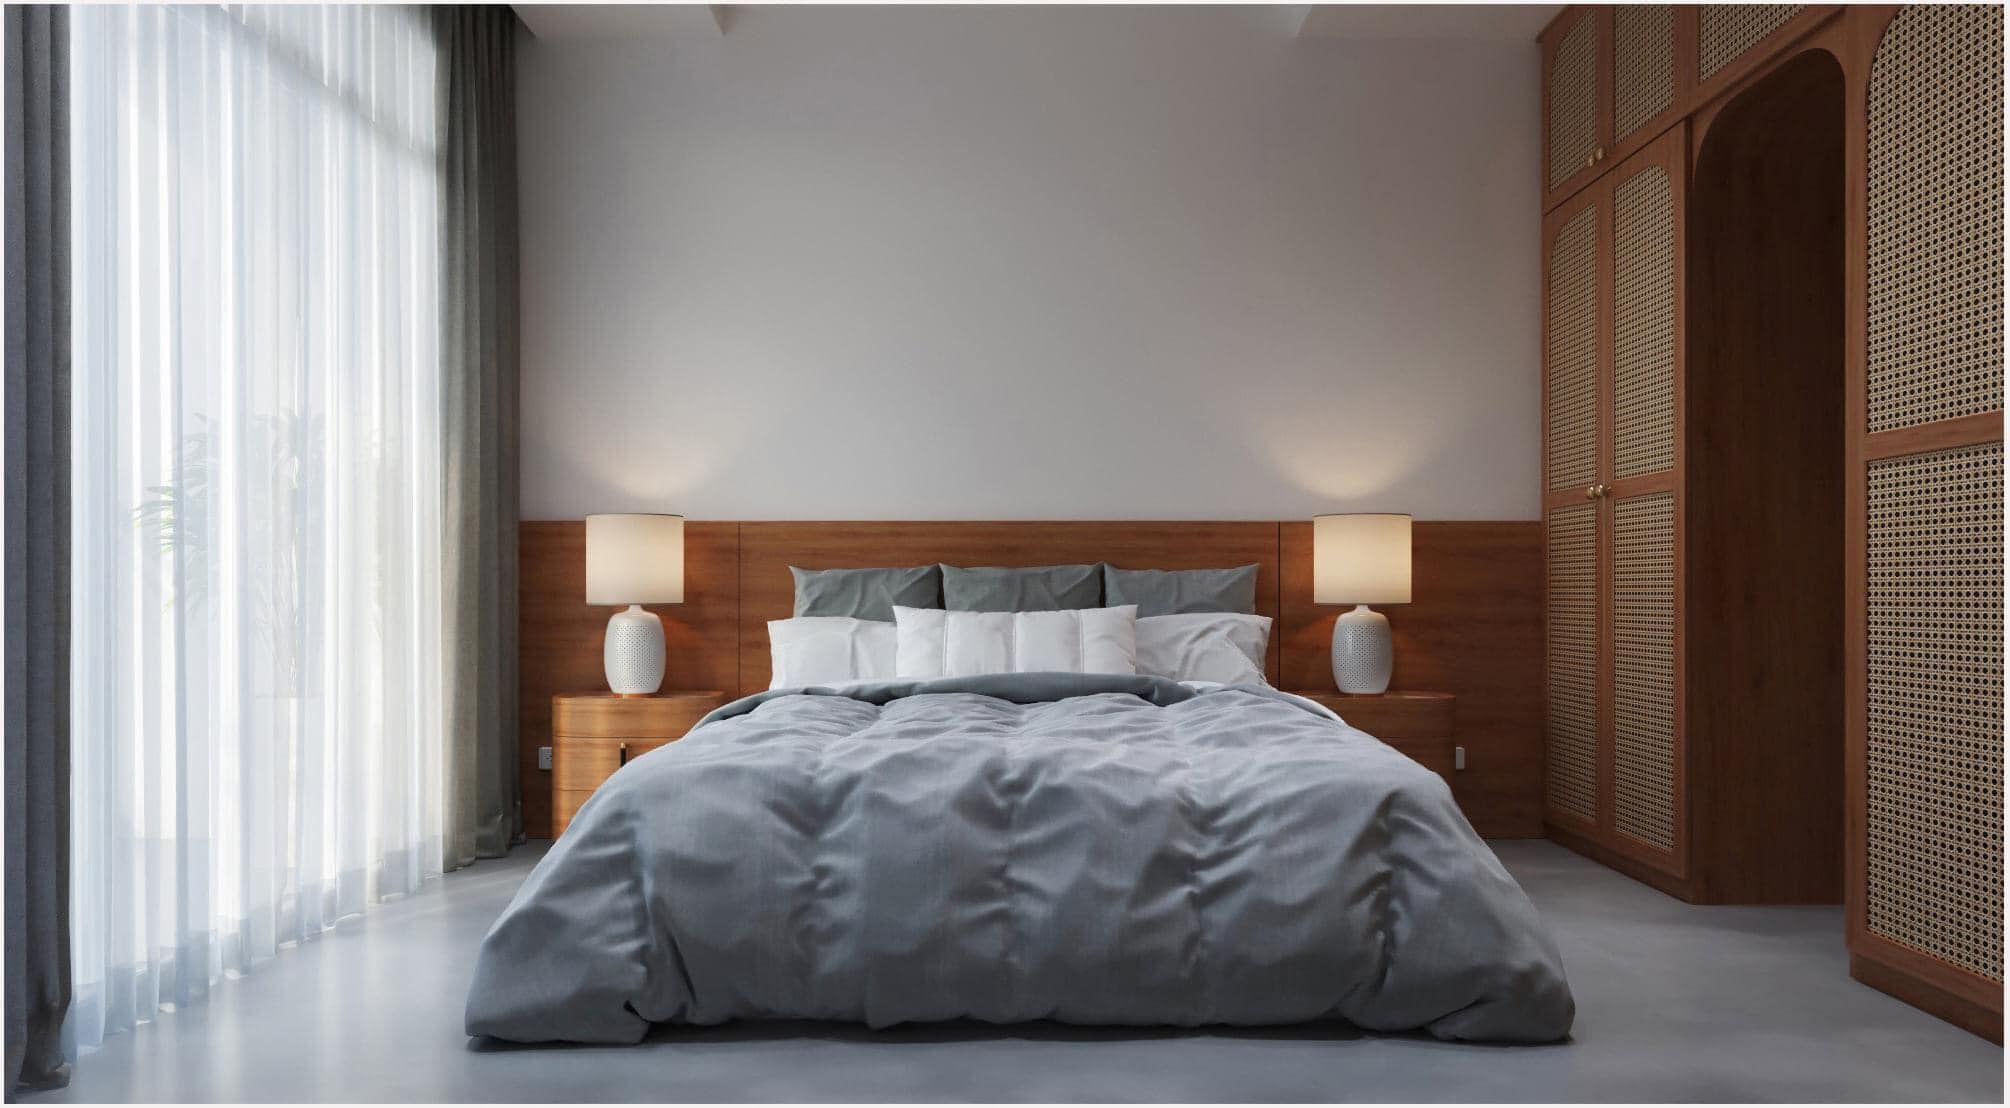 Nội thất gỗ tự nhiên tông màu ấm kết hợp với màu sắc tối giản nhã nhặn của ga giường, rèm cửa tọa không gian đơn giản nhẹ nhàng